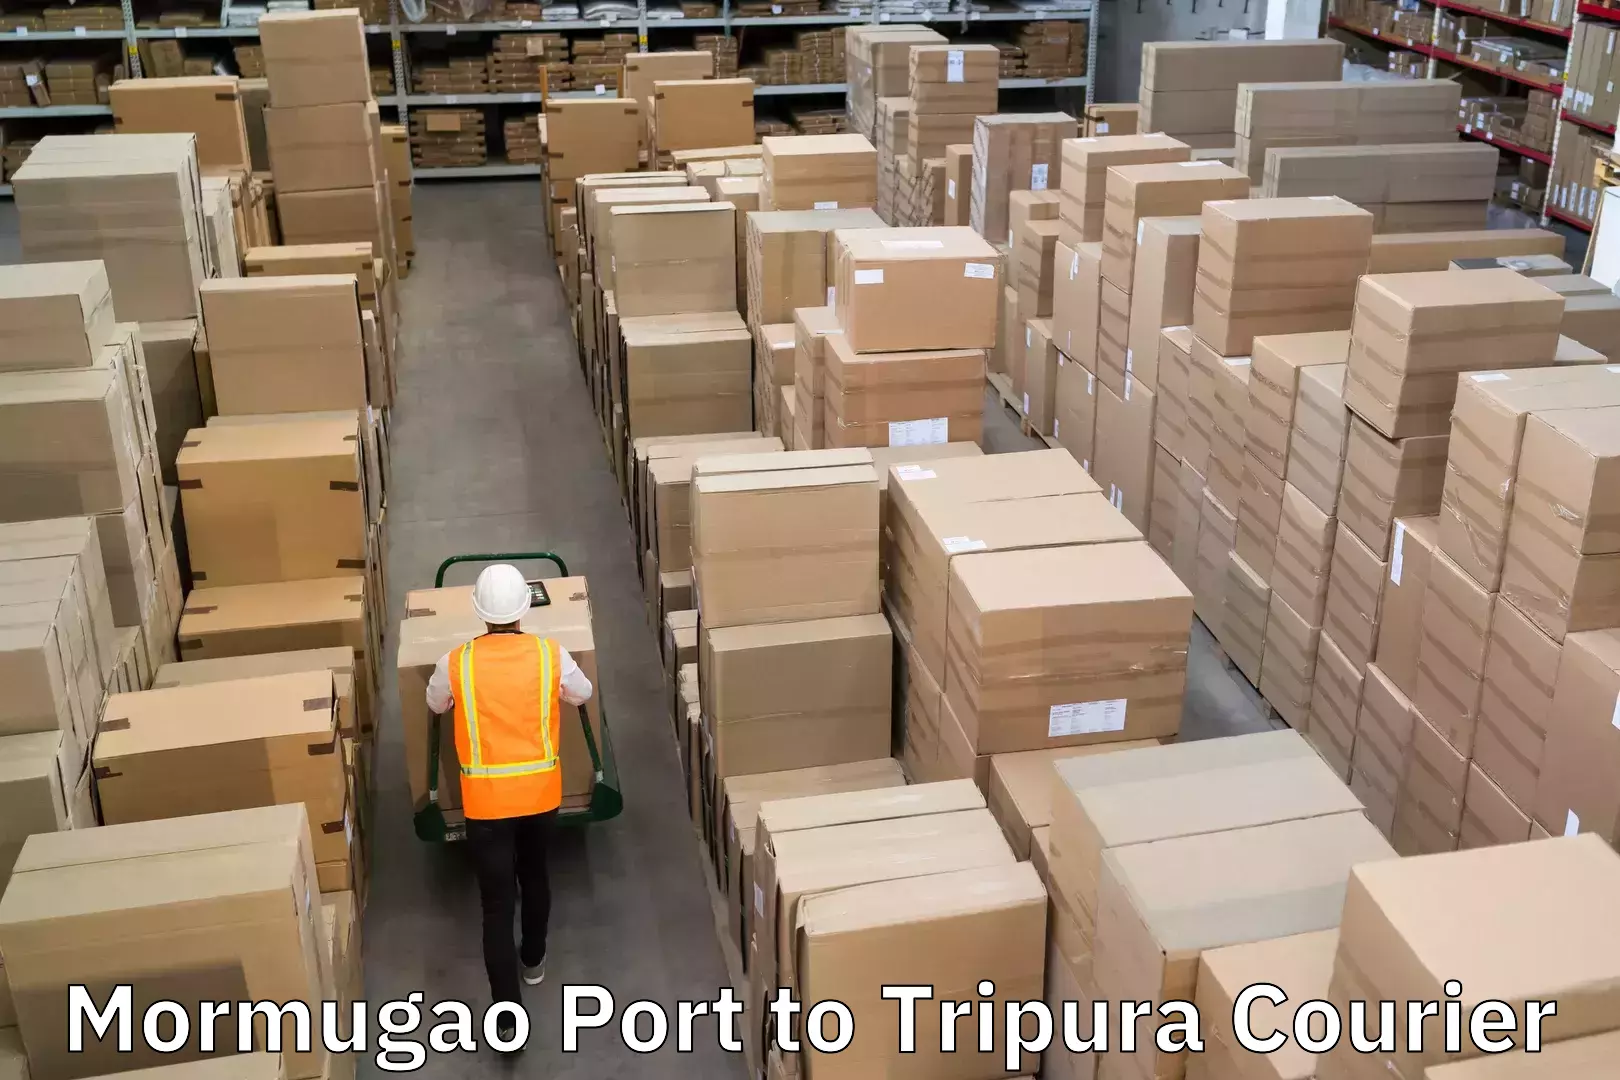 Express courier facilities Mormugao Port to Tripura